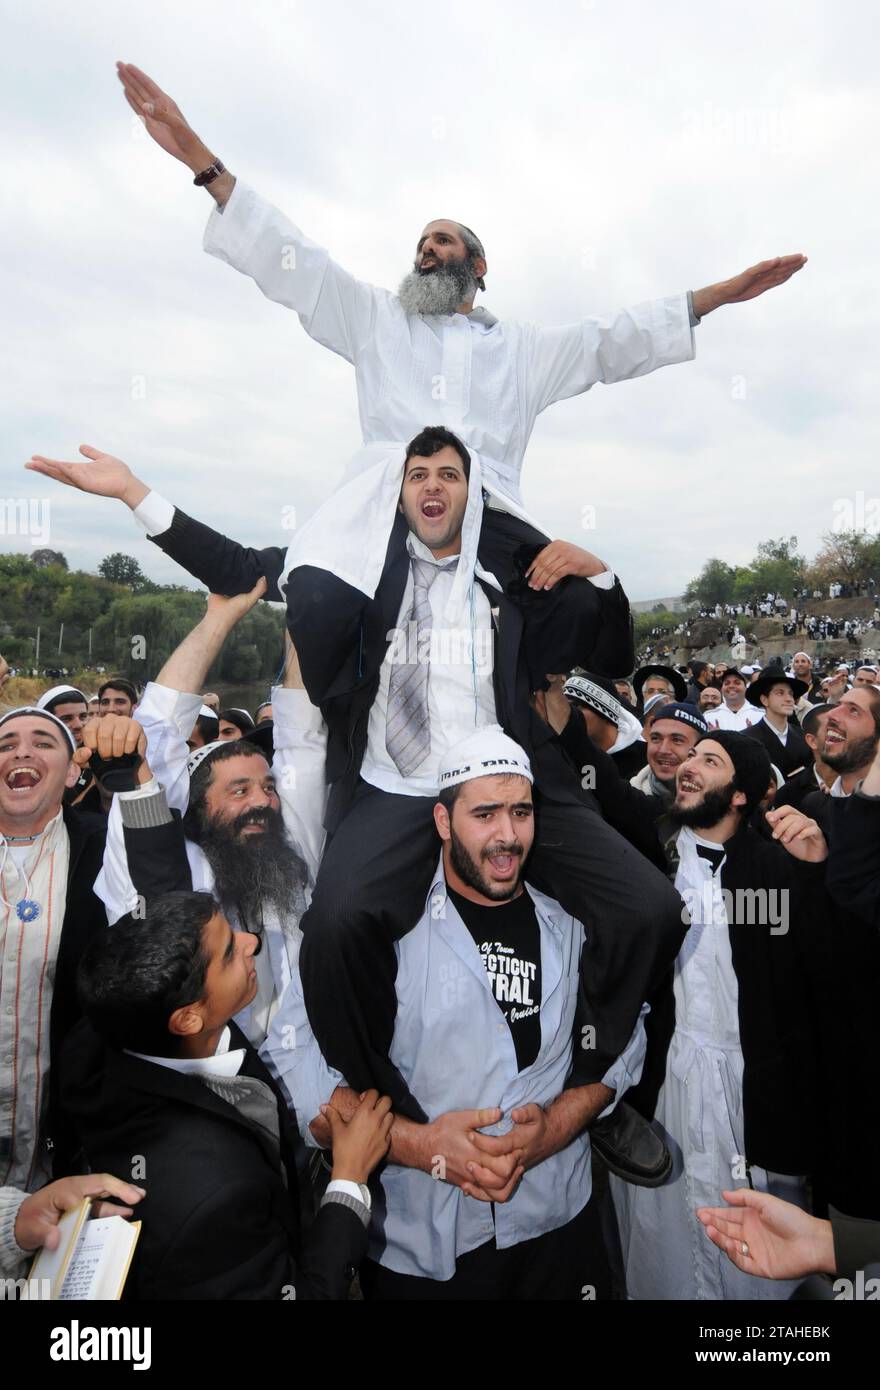 UMAN, UKRAINE - SEPTEMBER 20, 2009: Orthodox Jewish pilgrims in Uman, Ukrain during celebration Rosh Hashanah, the Jewish New Year in Uman, Ukraine. Stock Photo